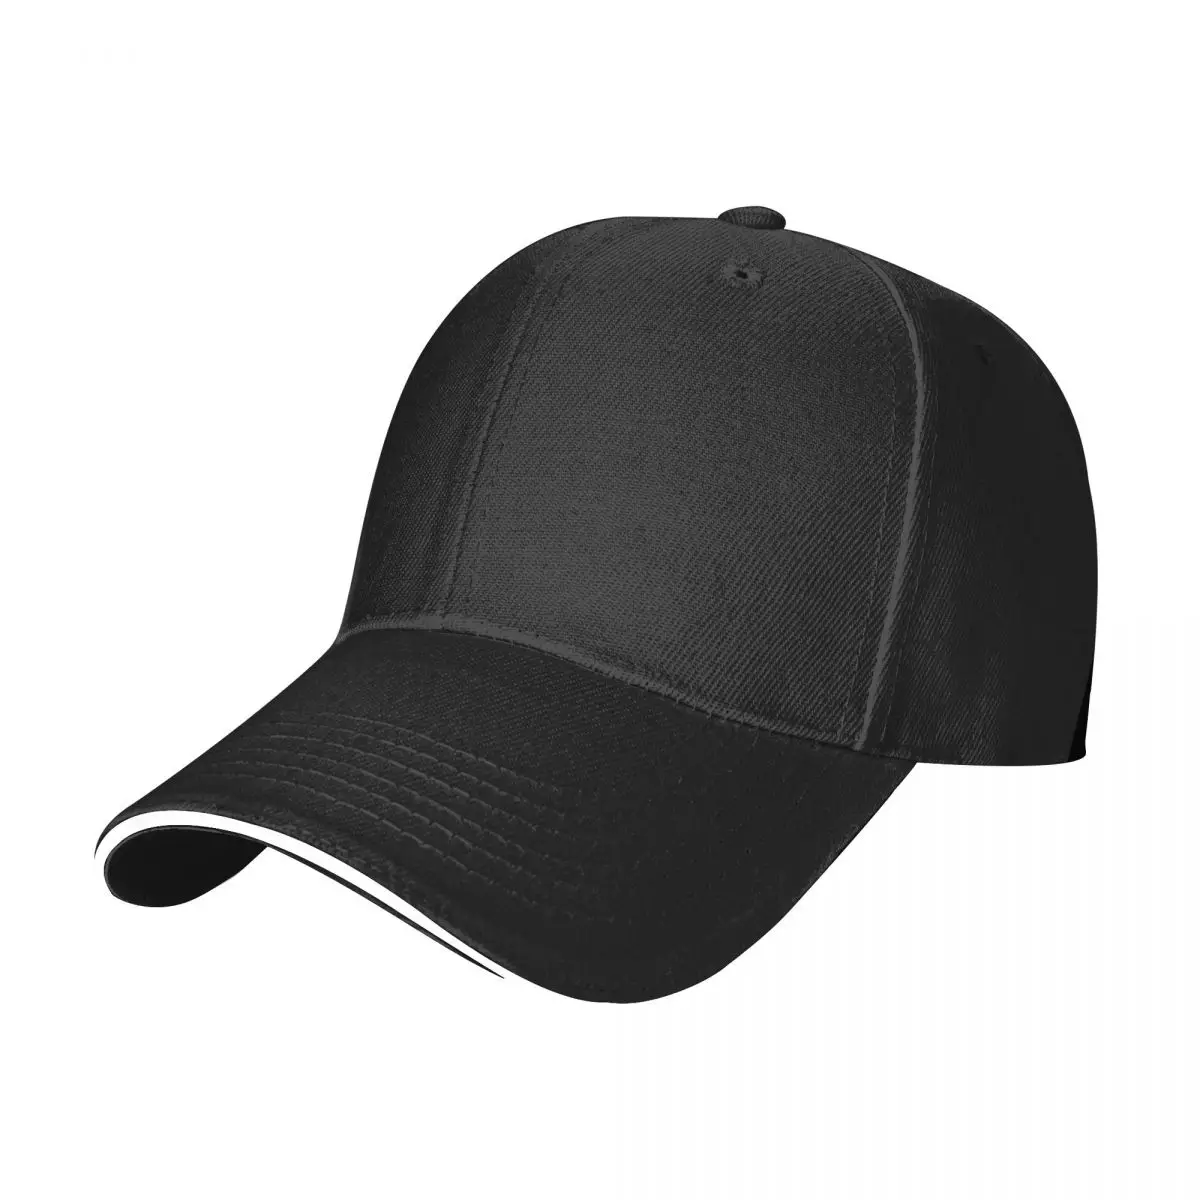 

Новинка бейсболка Warrior в японском стиле со знаком класса Роскошная брендовая пляжная кепка для игры в гольф мужская женская пляжная кепка для мужчин